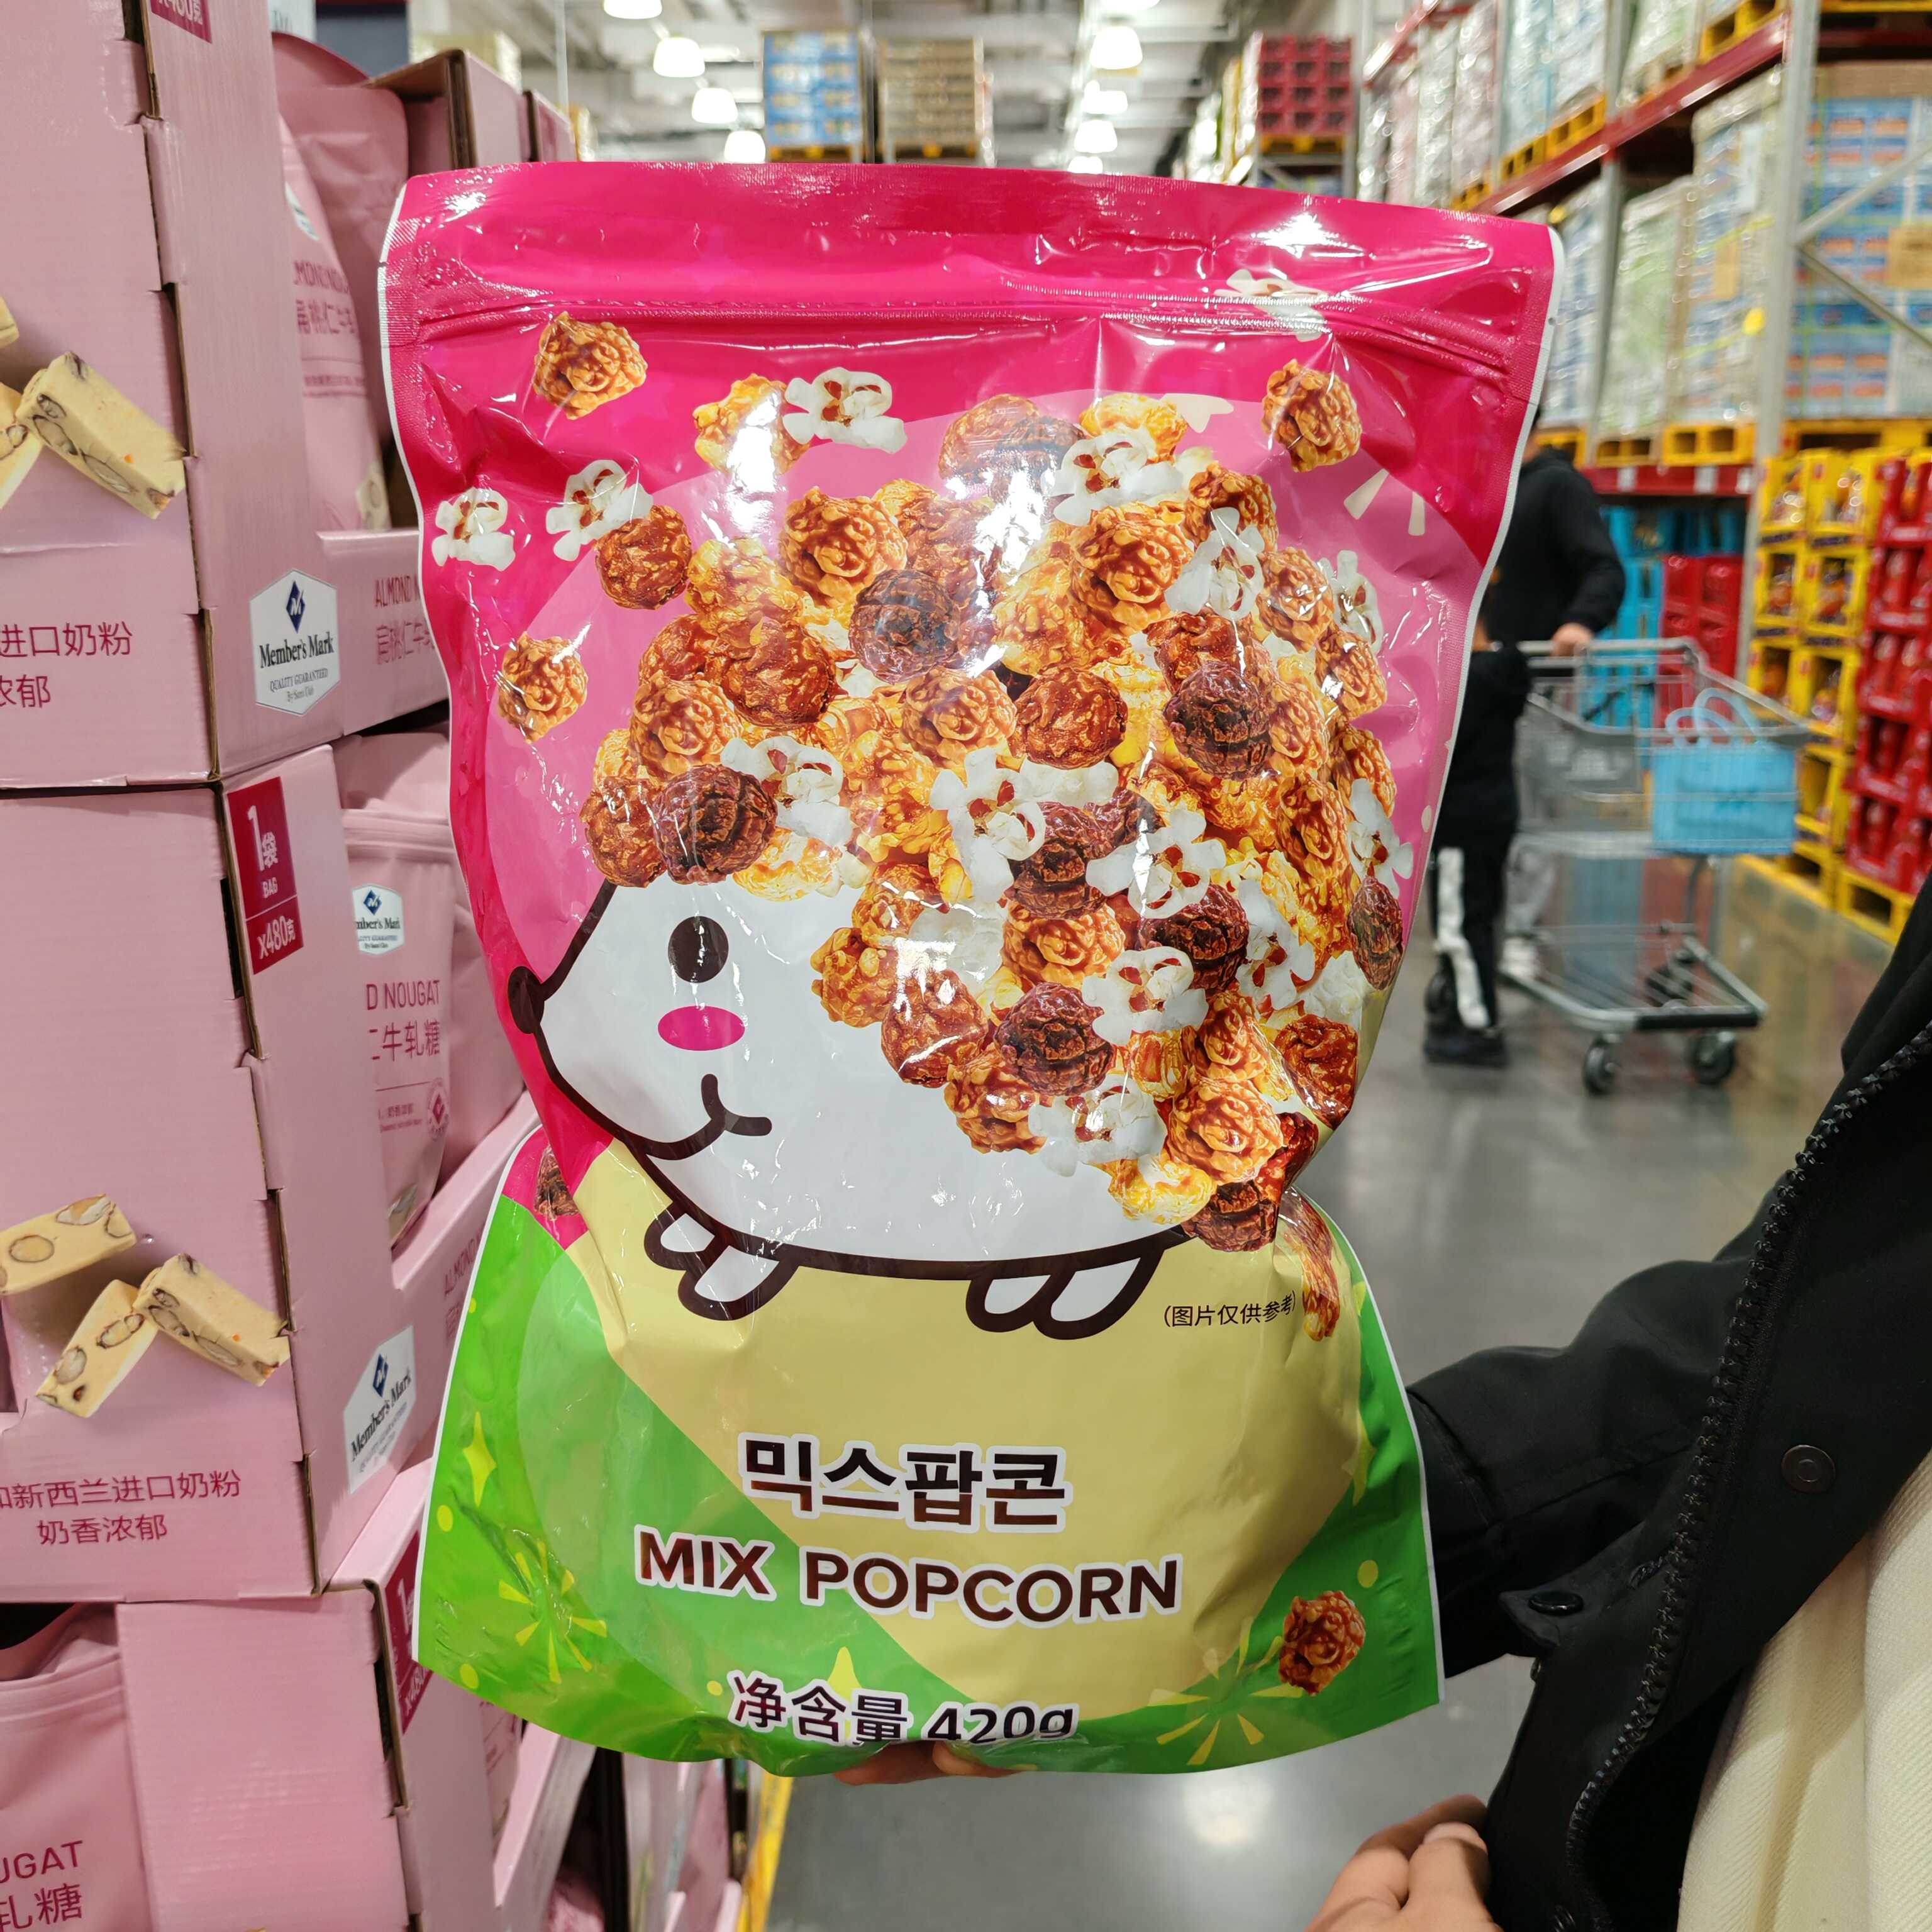 山姆代购 韩国进口混合口味膨化食品3种口味玉米花420g 零食/坚果/特产 果仁巧克力 原图主图